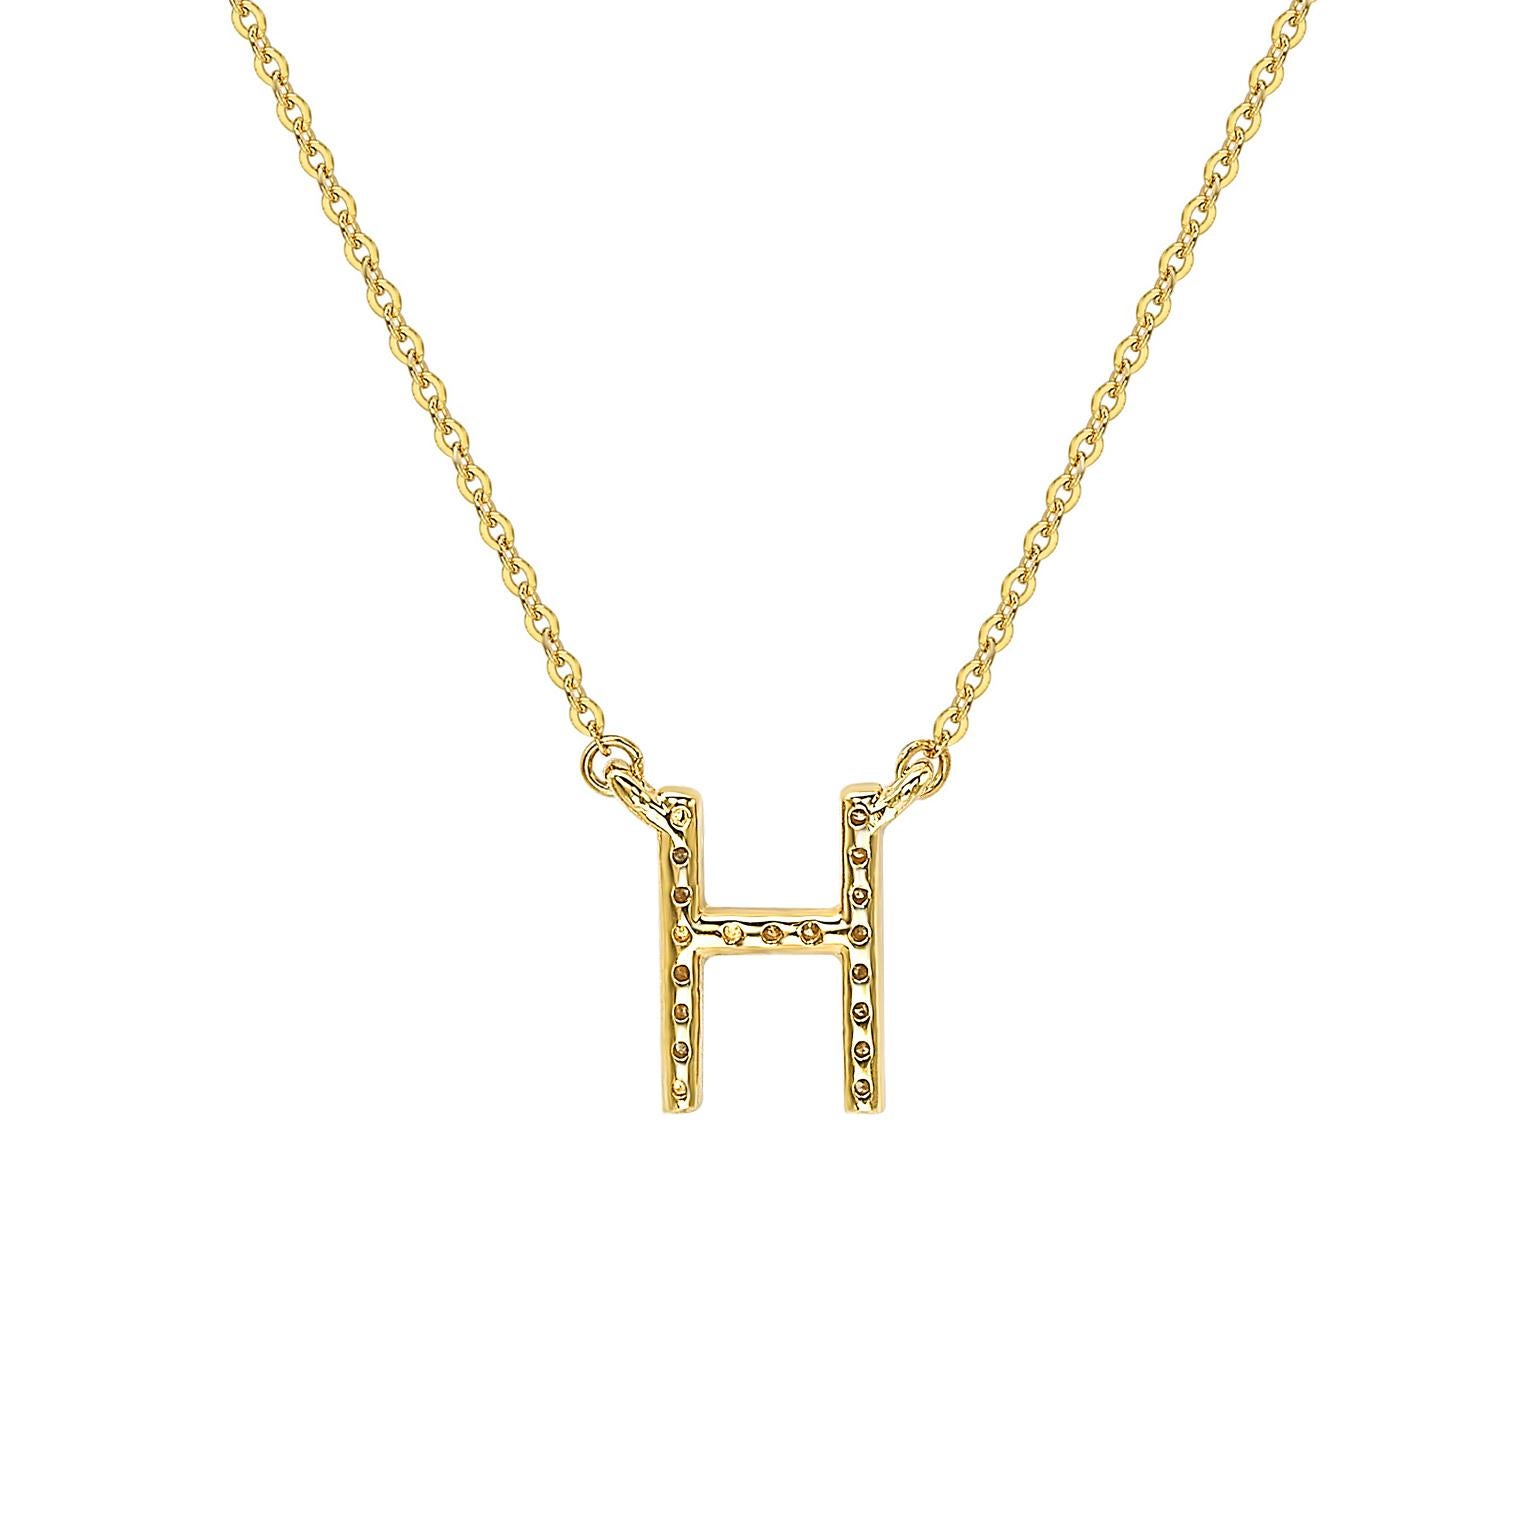 Cet époustouflant collier lettre personnalisé de Suzy Levian est orné de diamants naturels, sertis à la main dans de l'or jaune 14 carats. C'est le cadeau individuel parfait pour faire savoir à quelqu'un de spécial que vous pensez à lui. Chaque